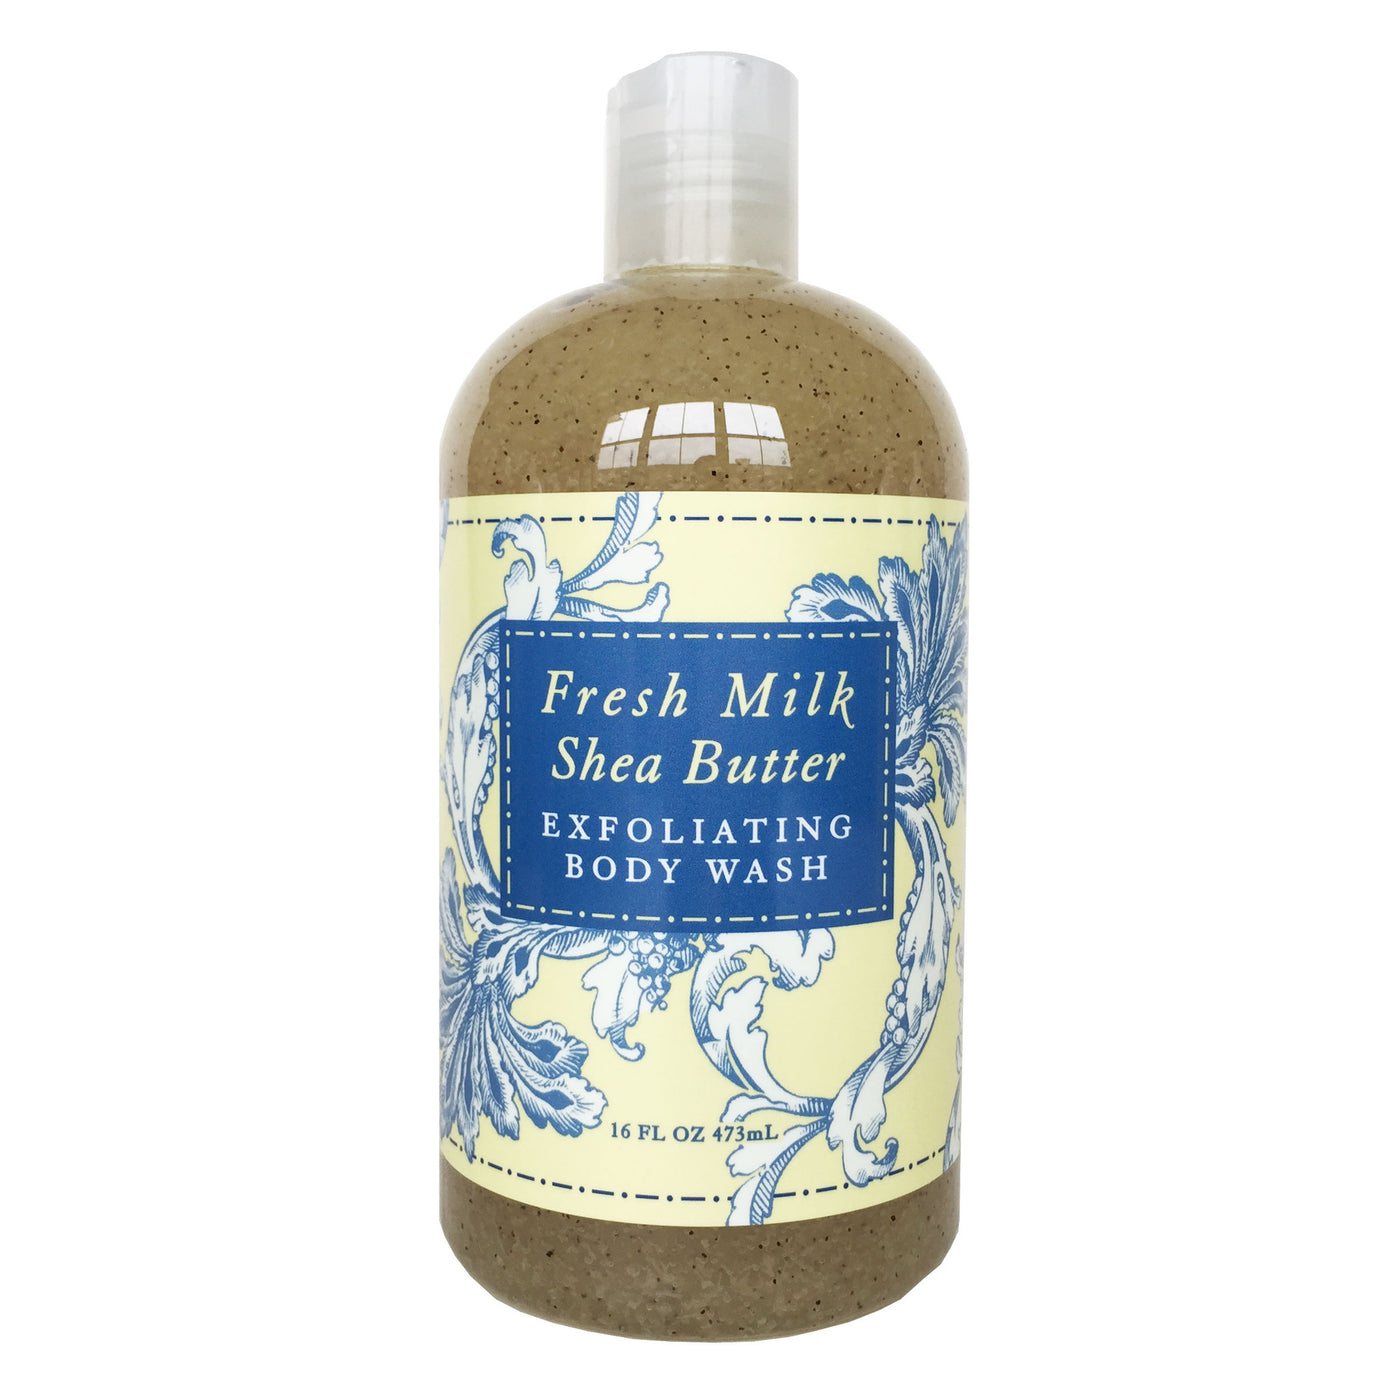 Fresh Milk Shea Butter Exfoliating Body Wash